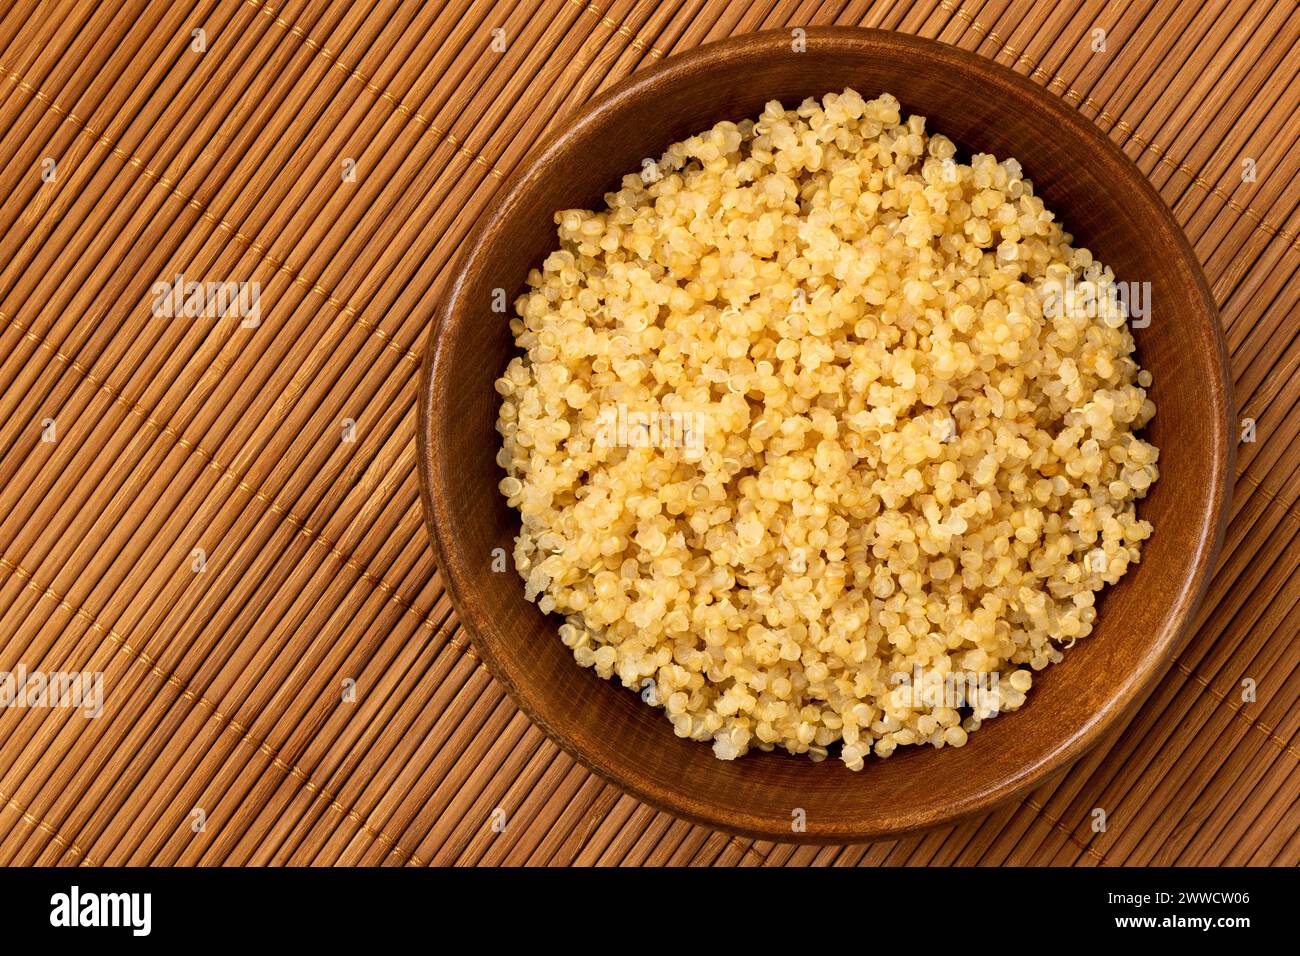 Quinoa blanc cuit dans un bol en bois foncé isolé sur bambou mat. Vue de dessus. Banque D'Images